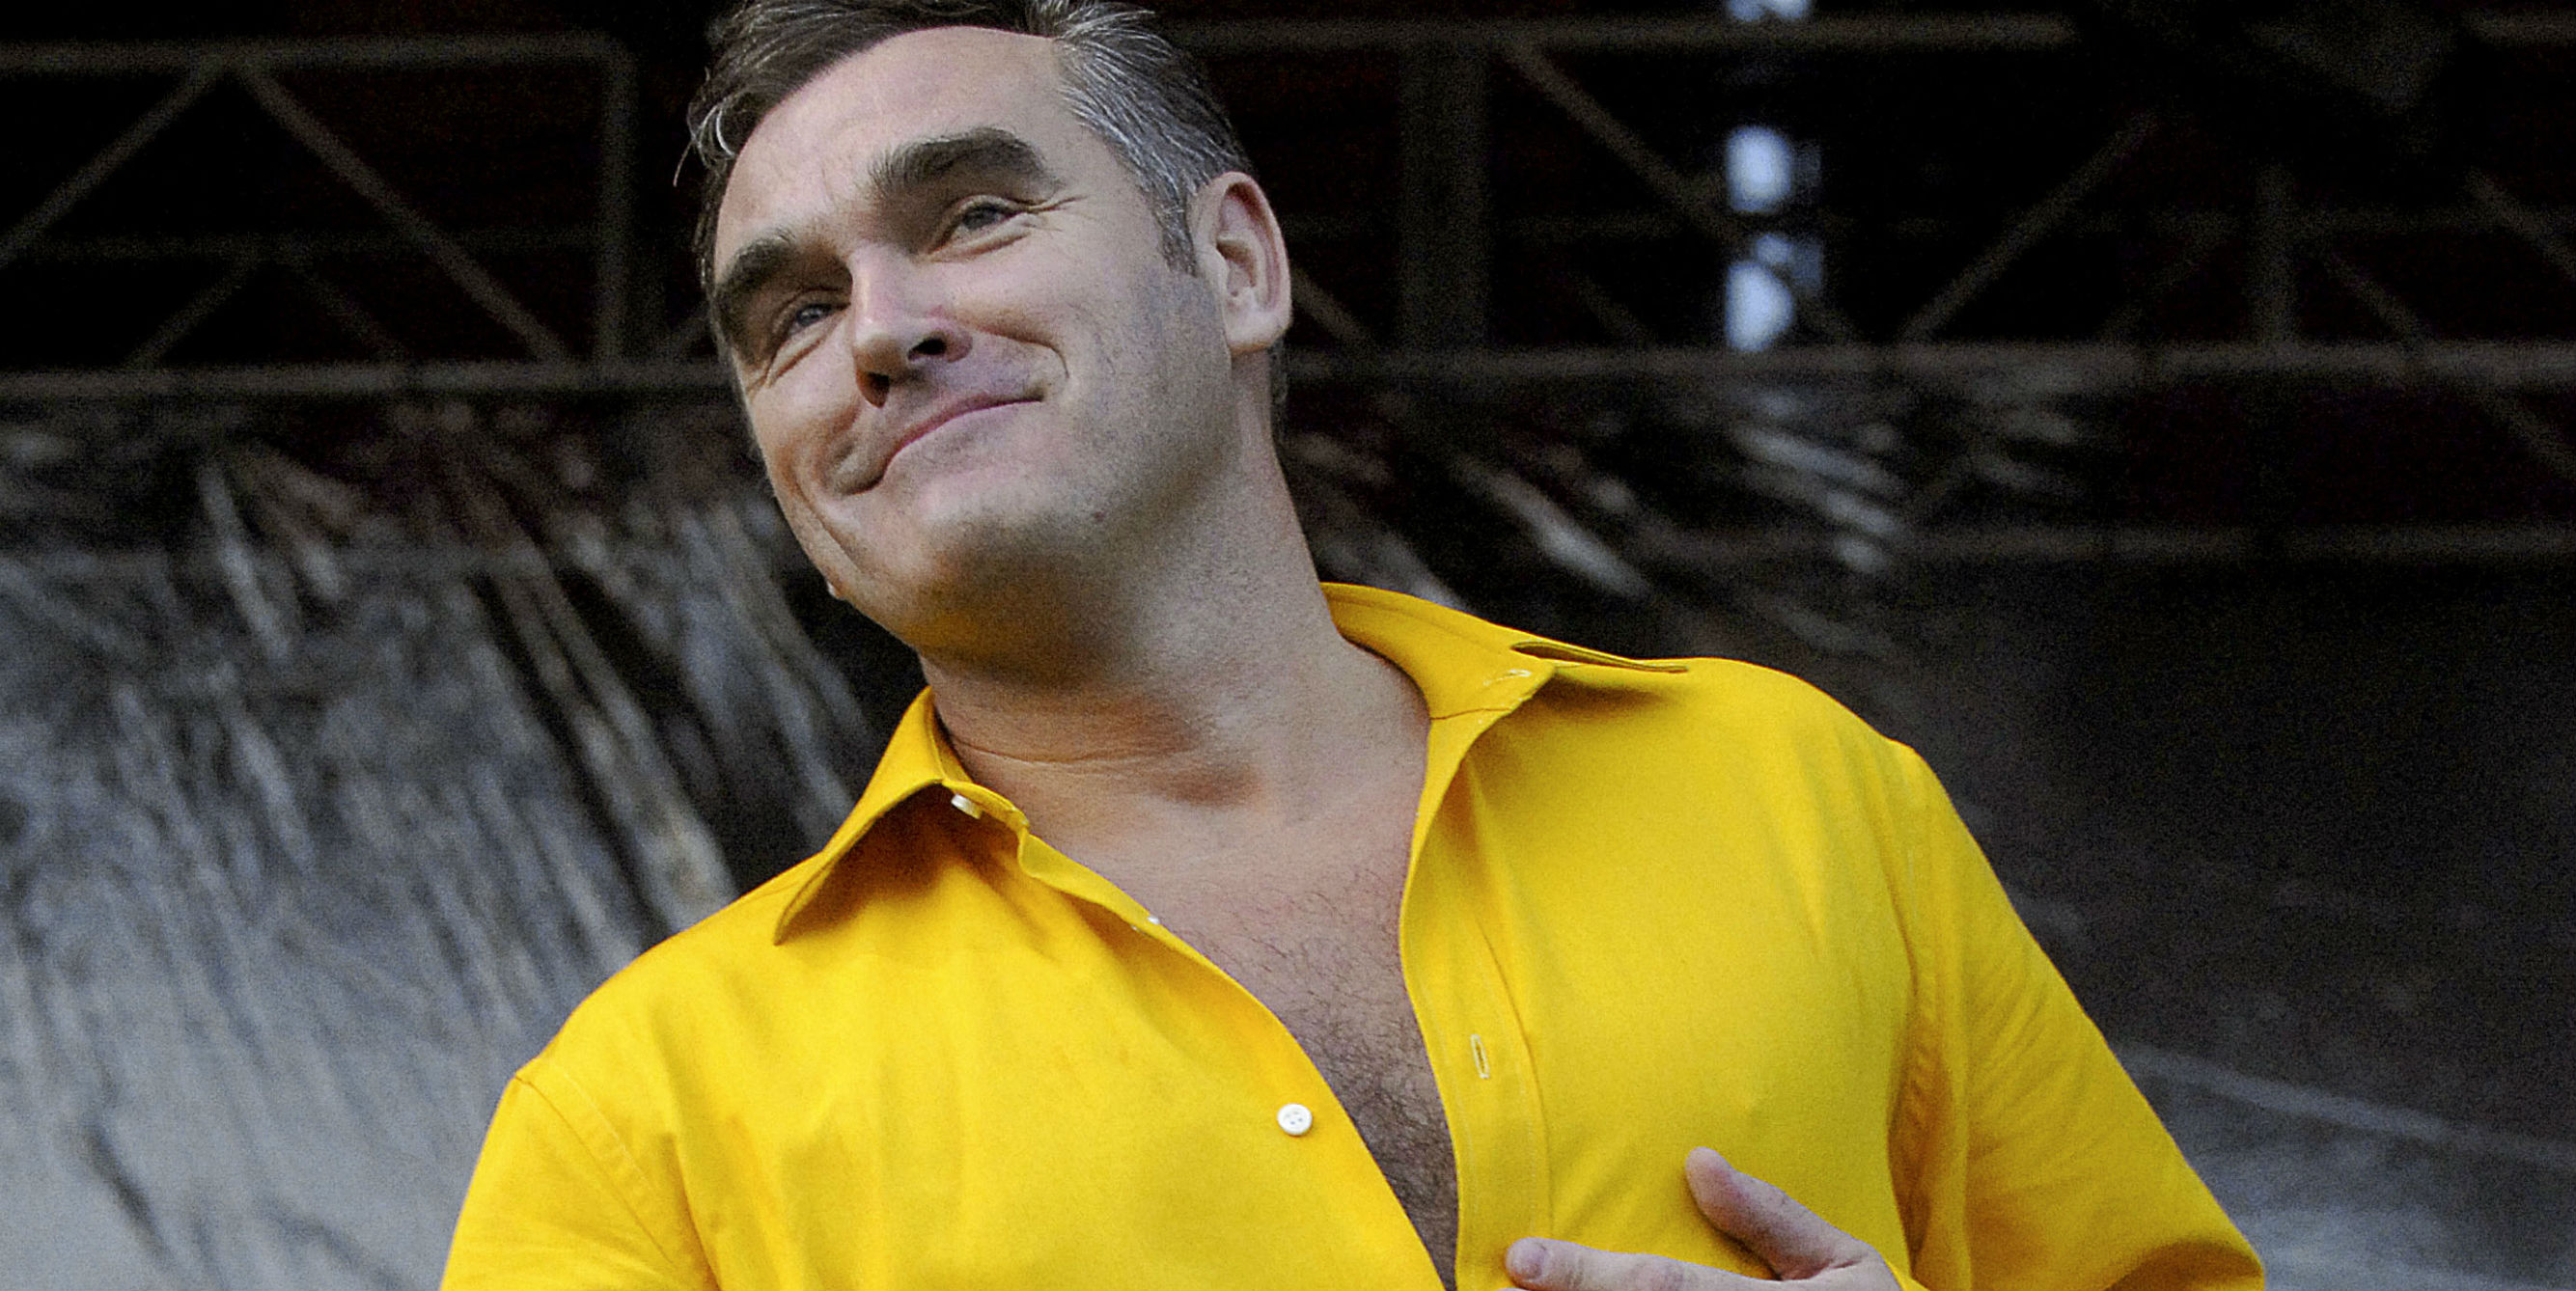 Agora sim, Morrissey está chegando em Nov/15 no Brasil (+ datas em toda América do Sul)